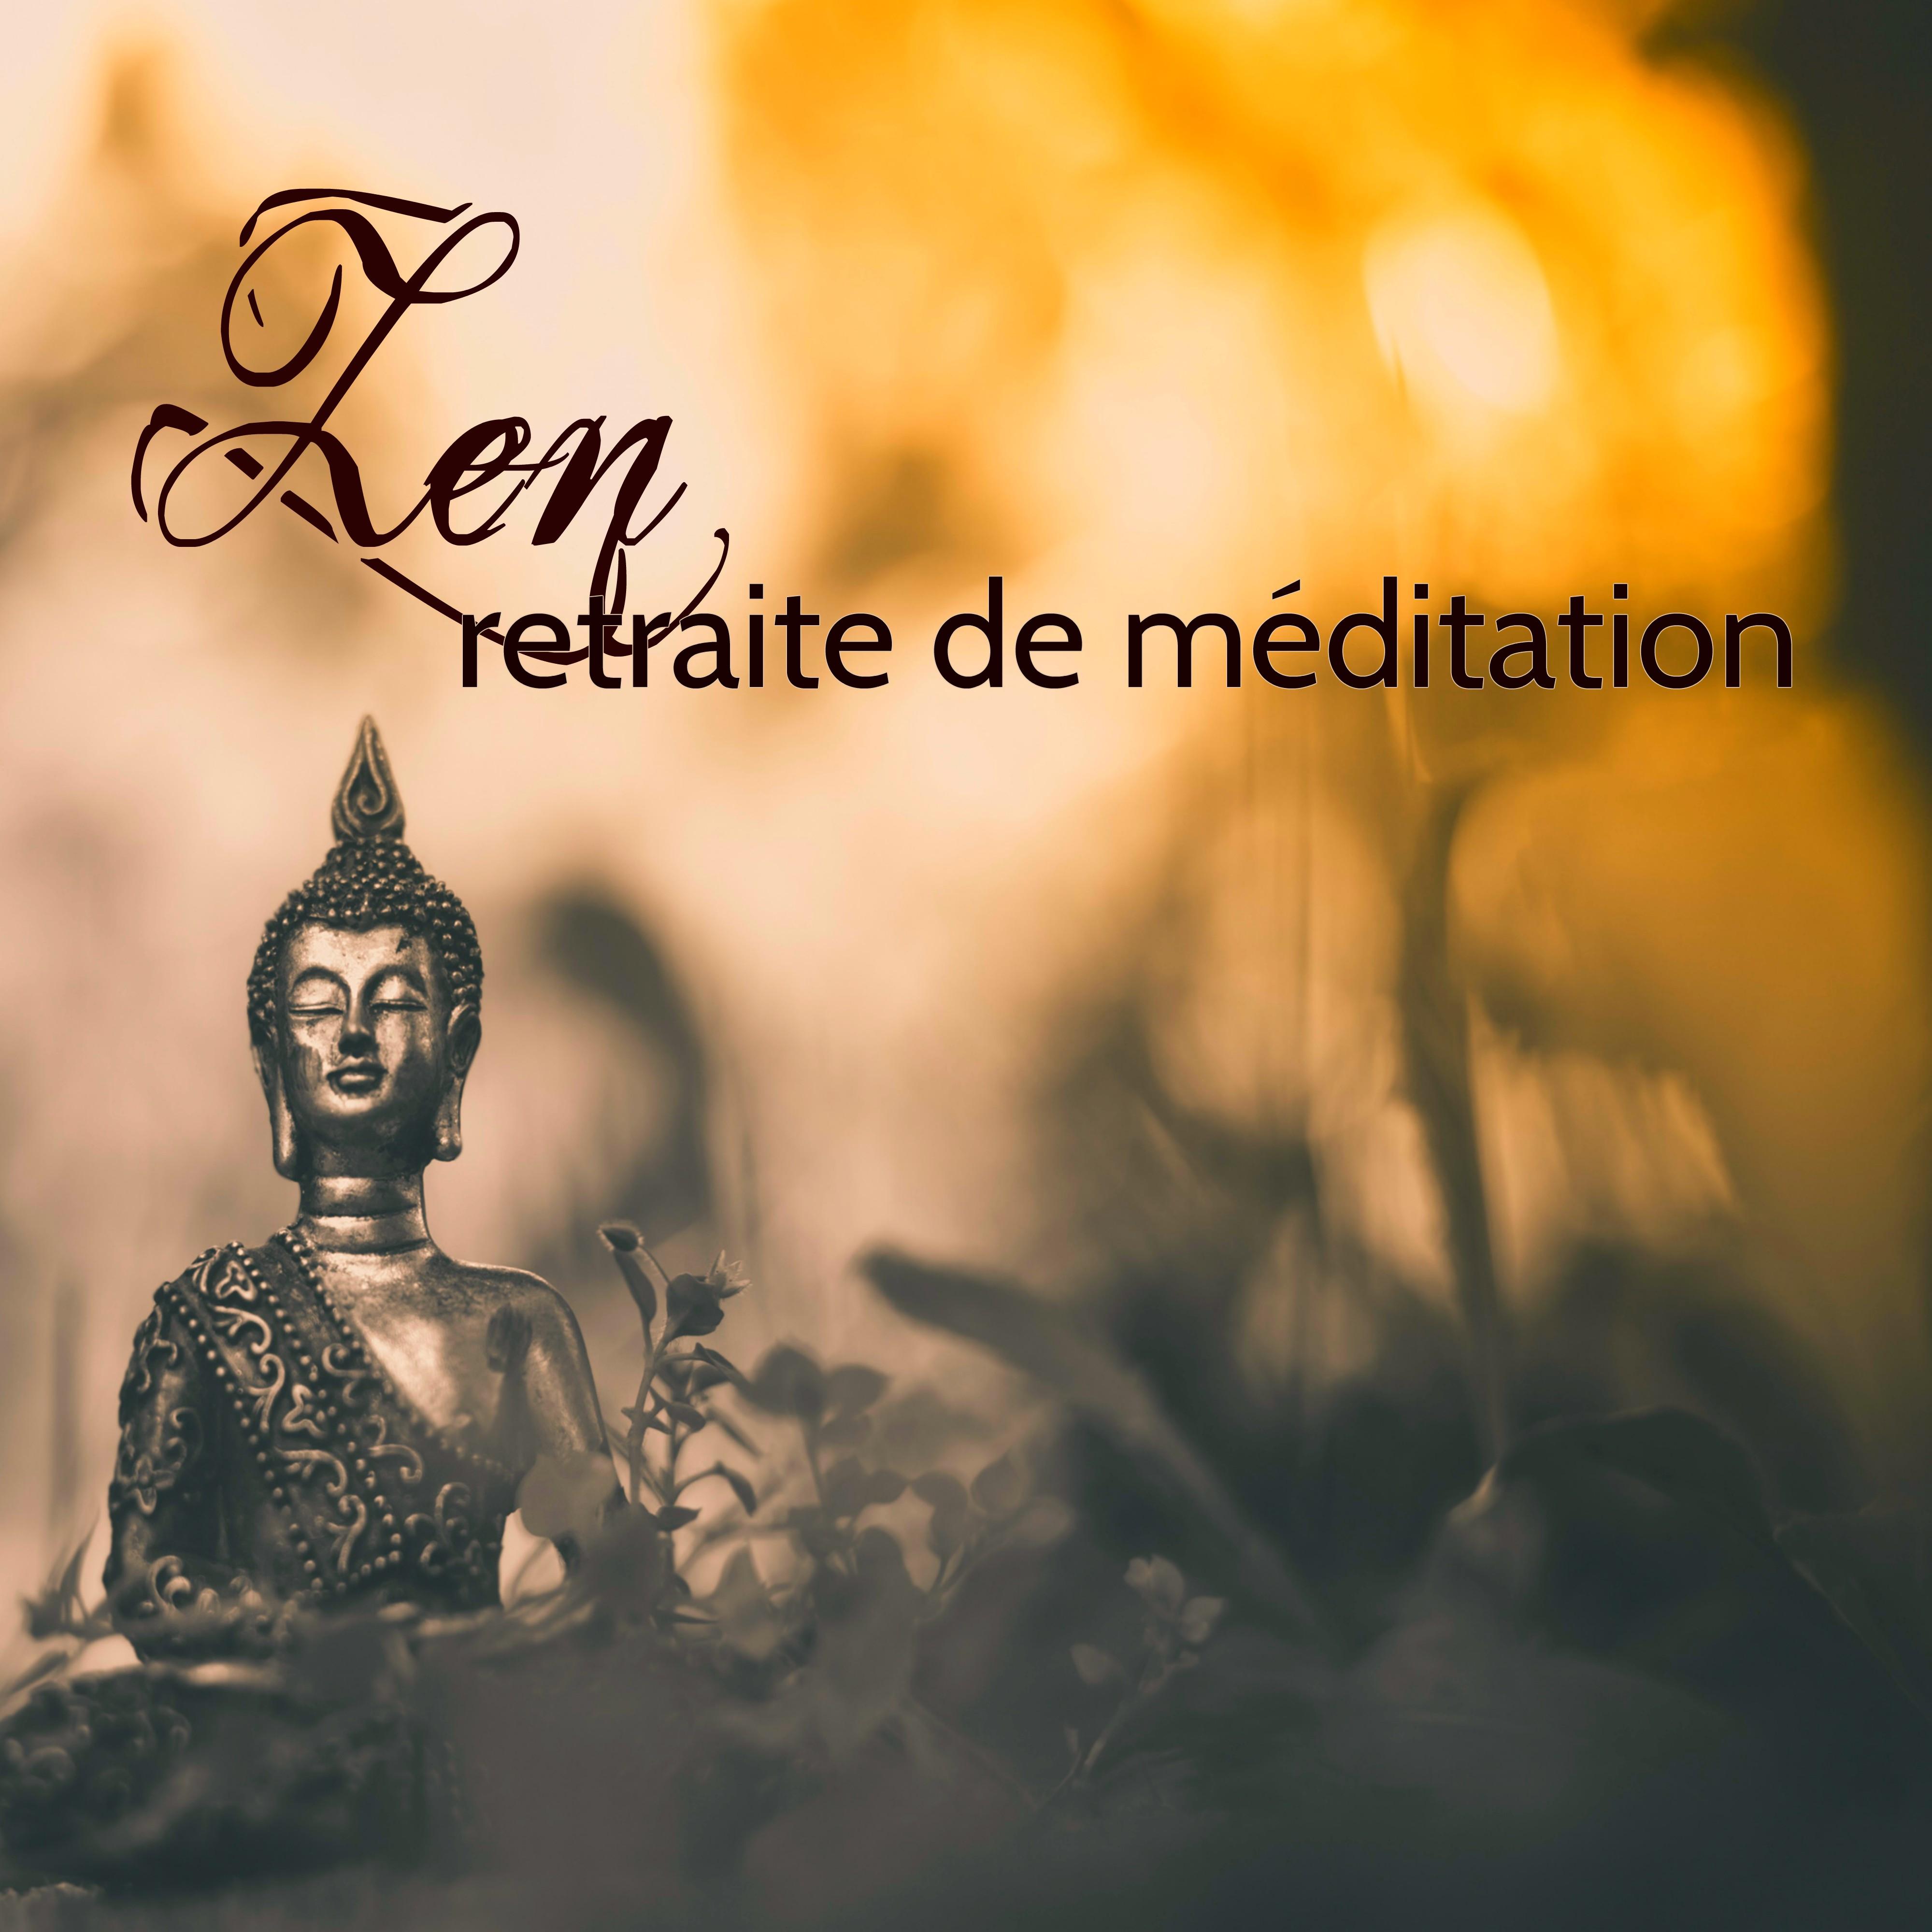 Zen, retraite de méditation – Musique zen très douce pour la méditation, le relax et le sommeil